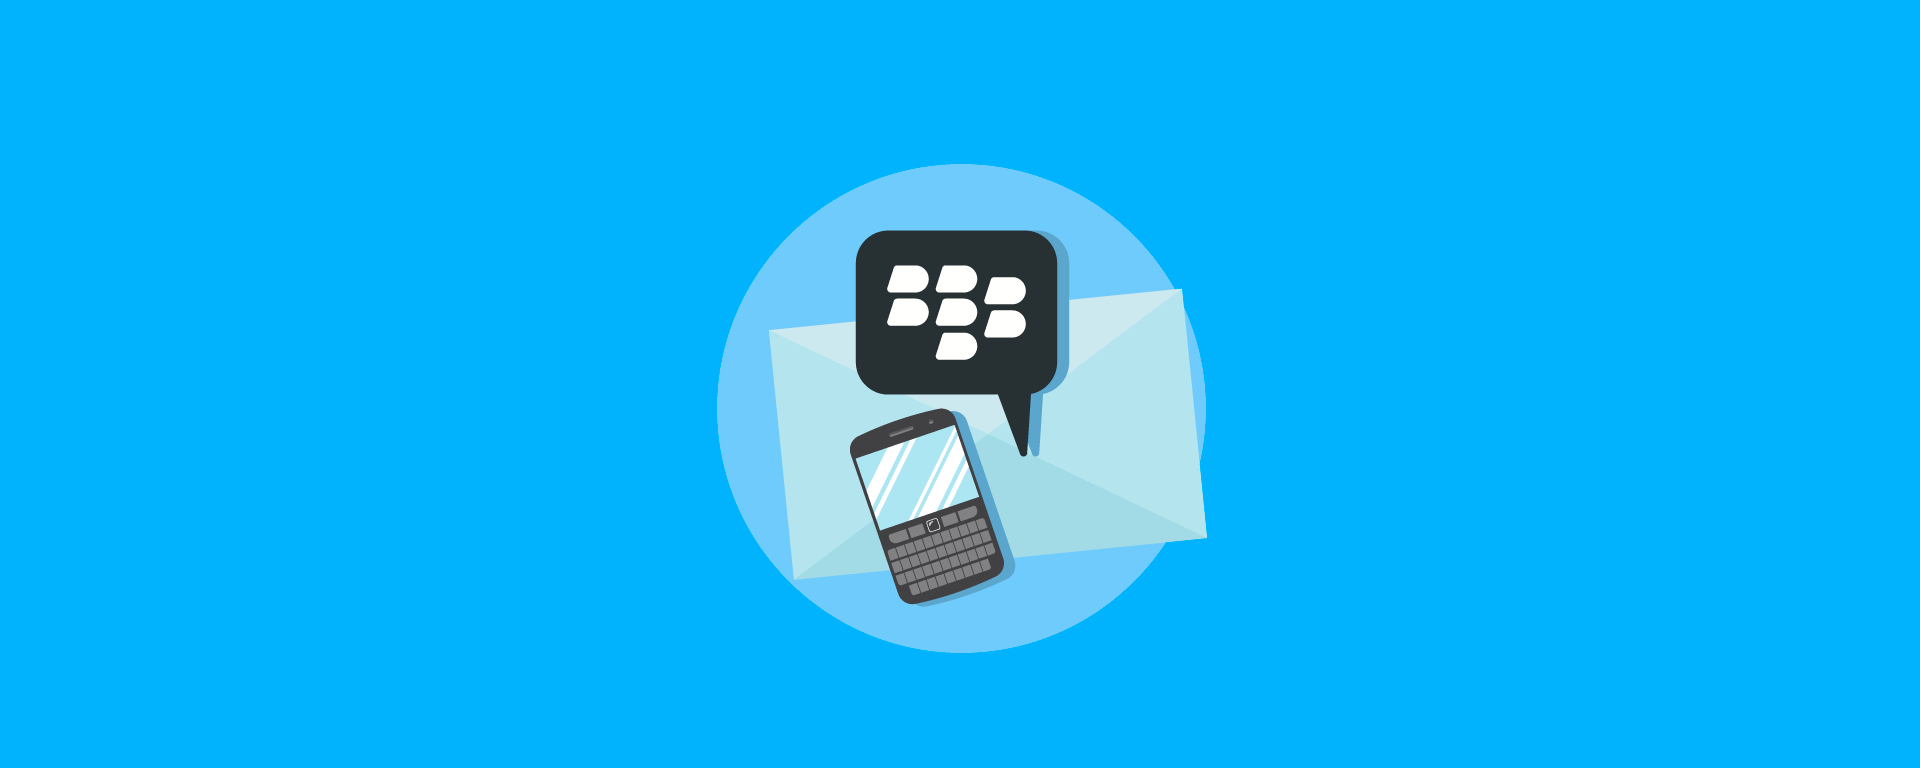 Configurar correo electrónico corporativo en tu BlackBerry